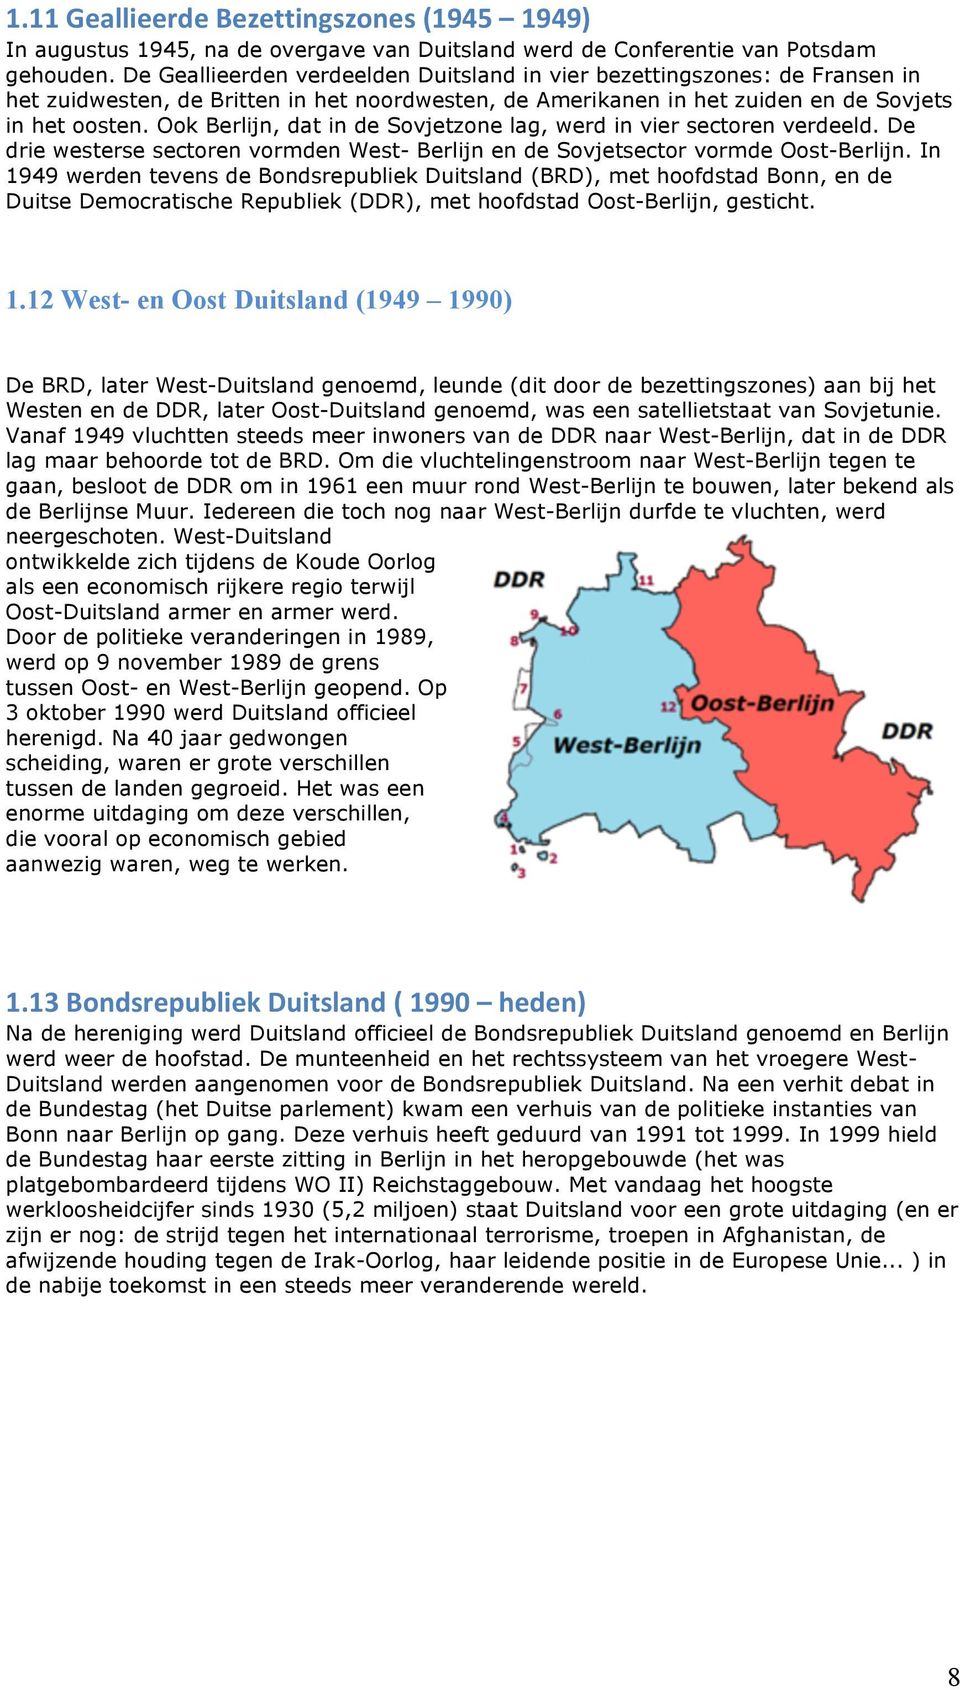 Ook Berlijn, dat in de Sovjetzone lag, werd in vier sectoren verdeeld. De drie westerse sectoren vormden West- Berlijn en de Sovjetsector vormde Oost-Berlijn.